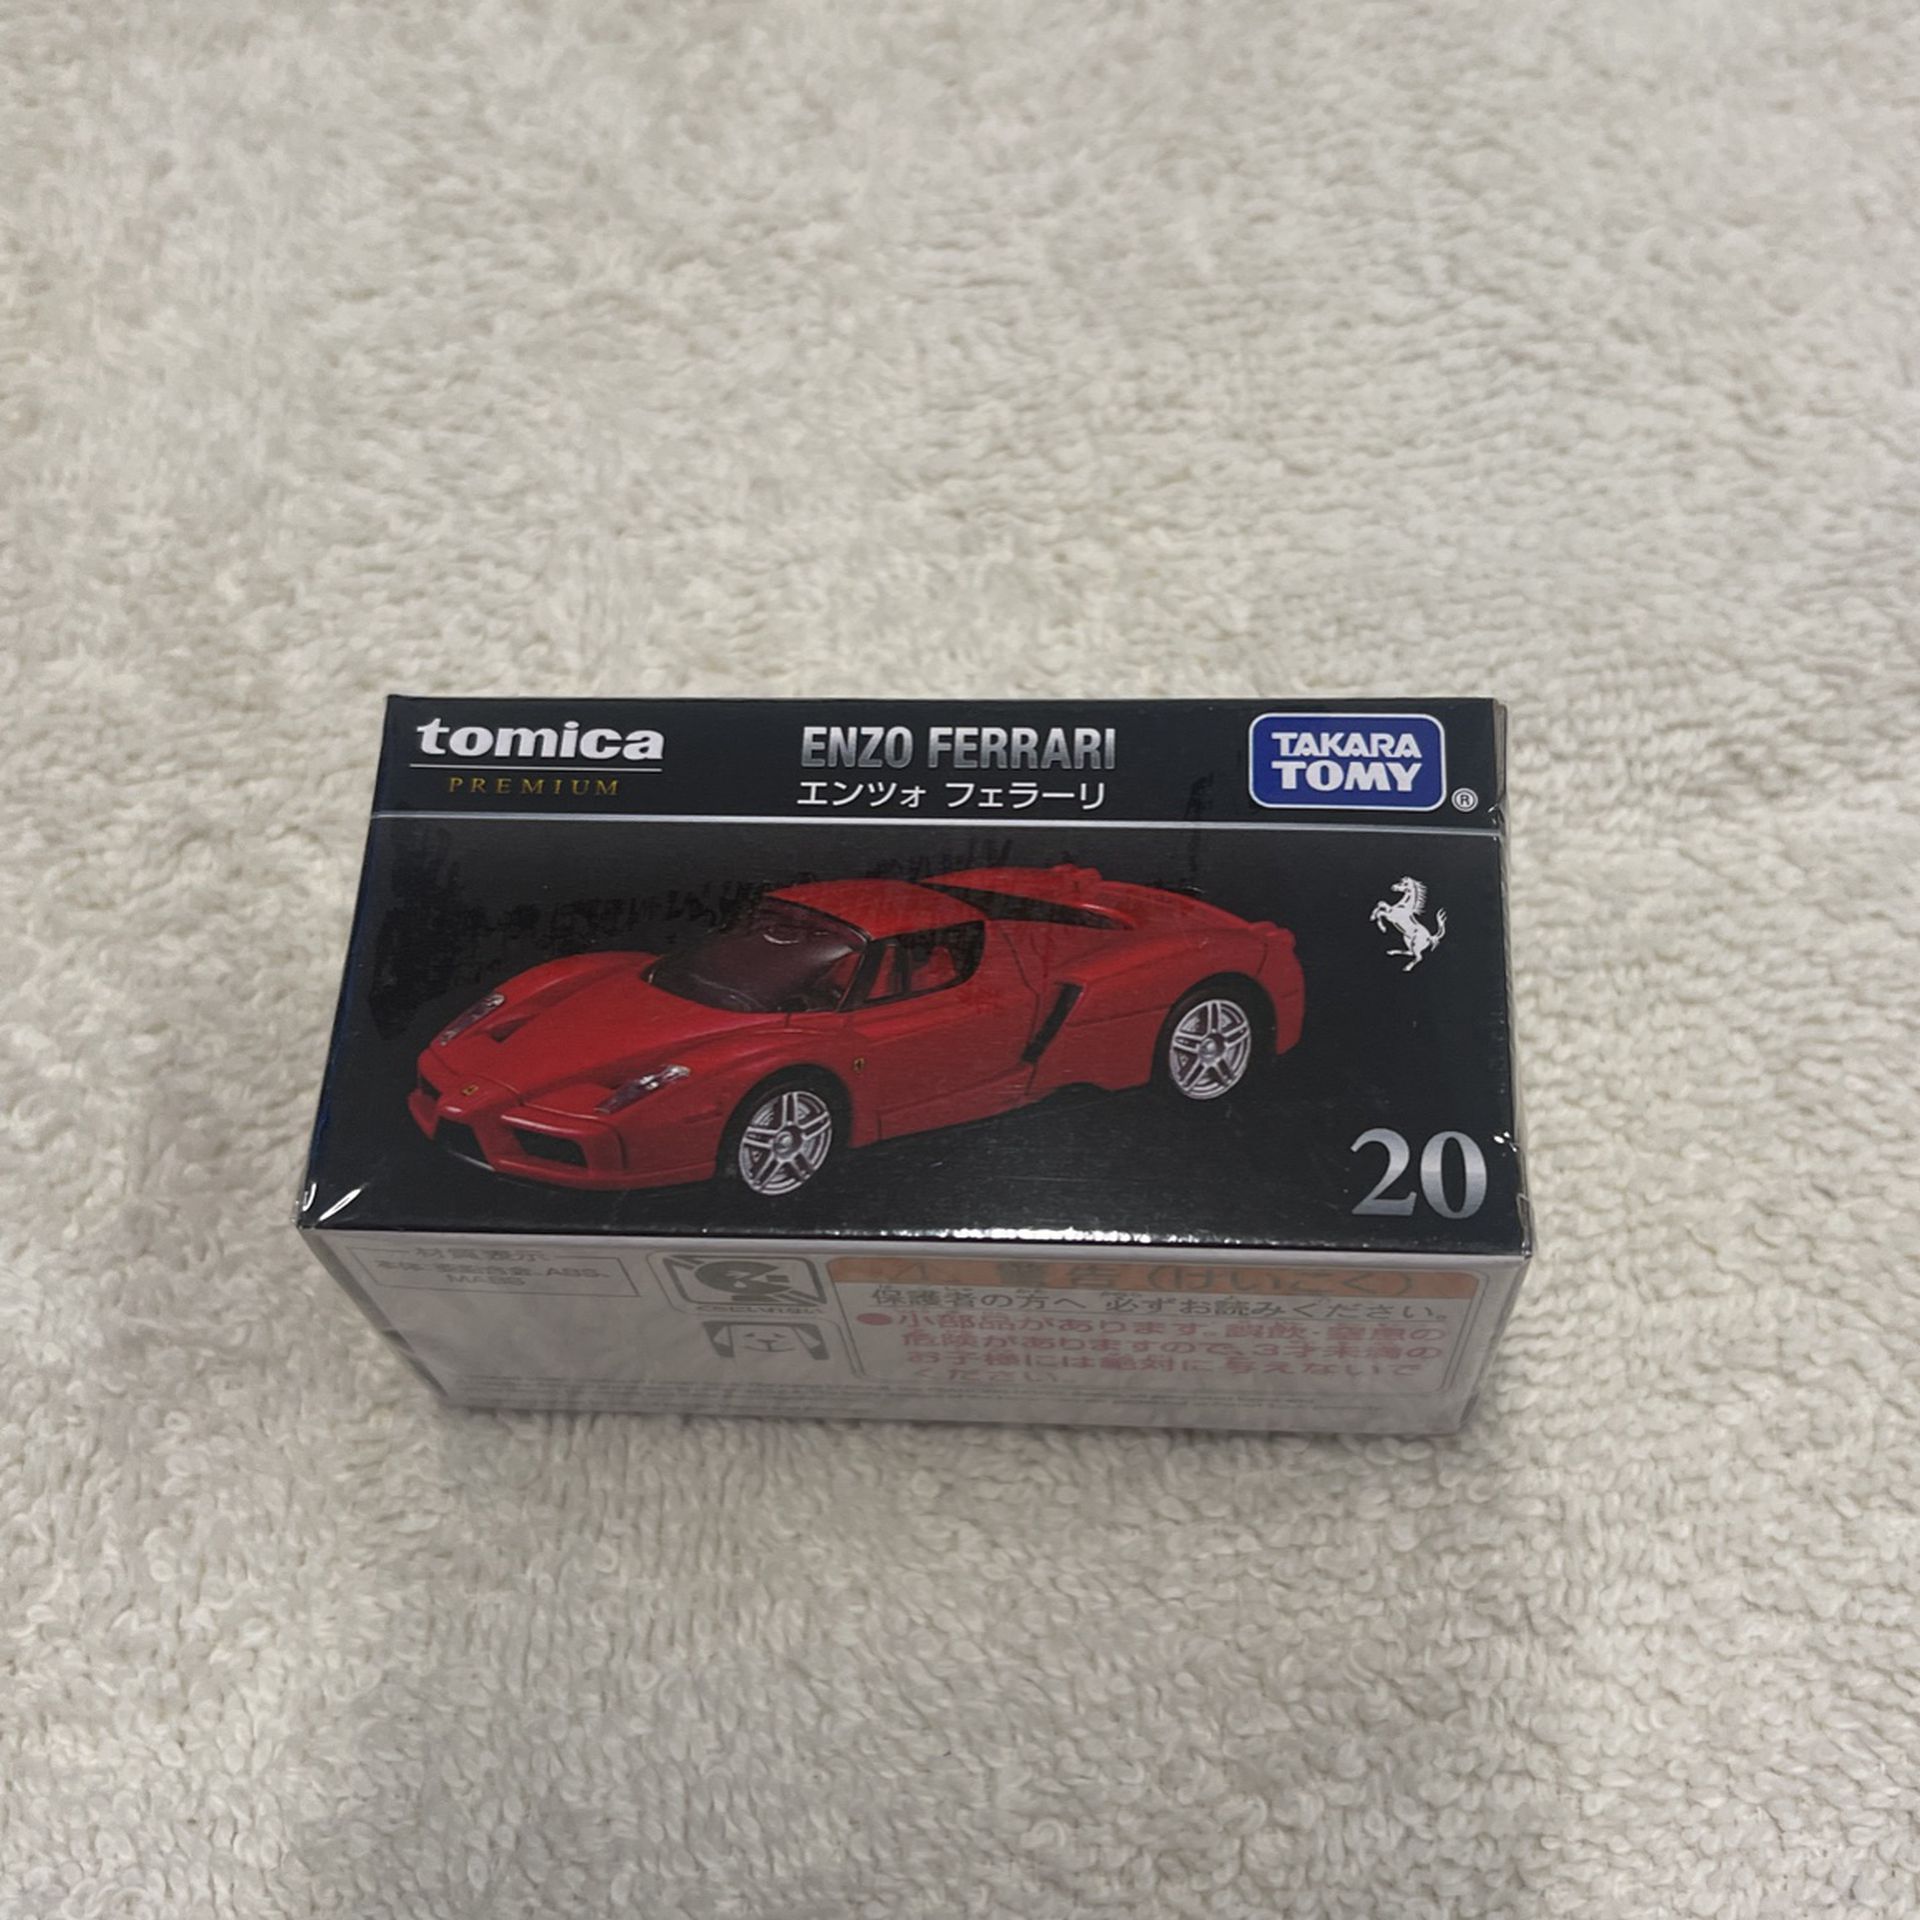 1:64 Tomica Premium Enzo Ferrari